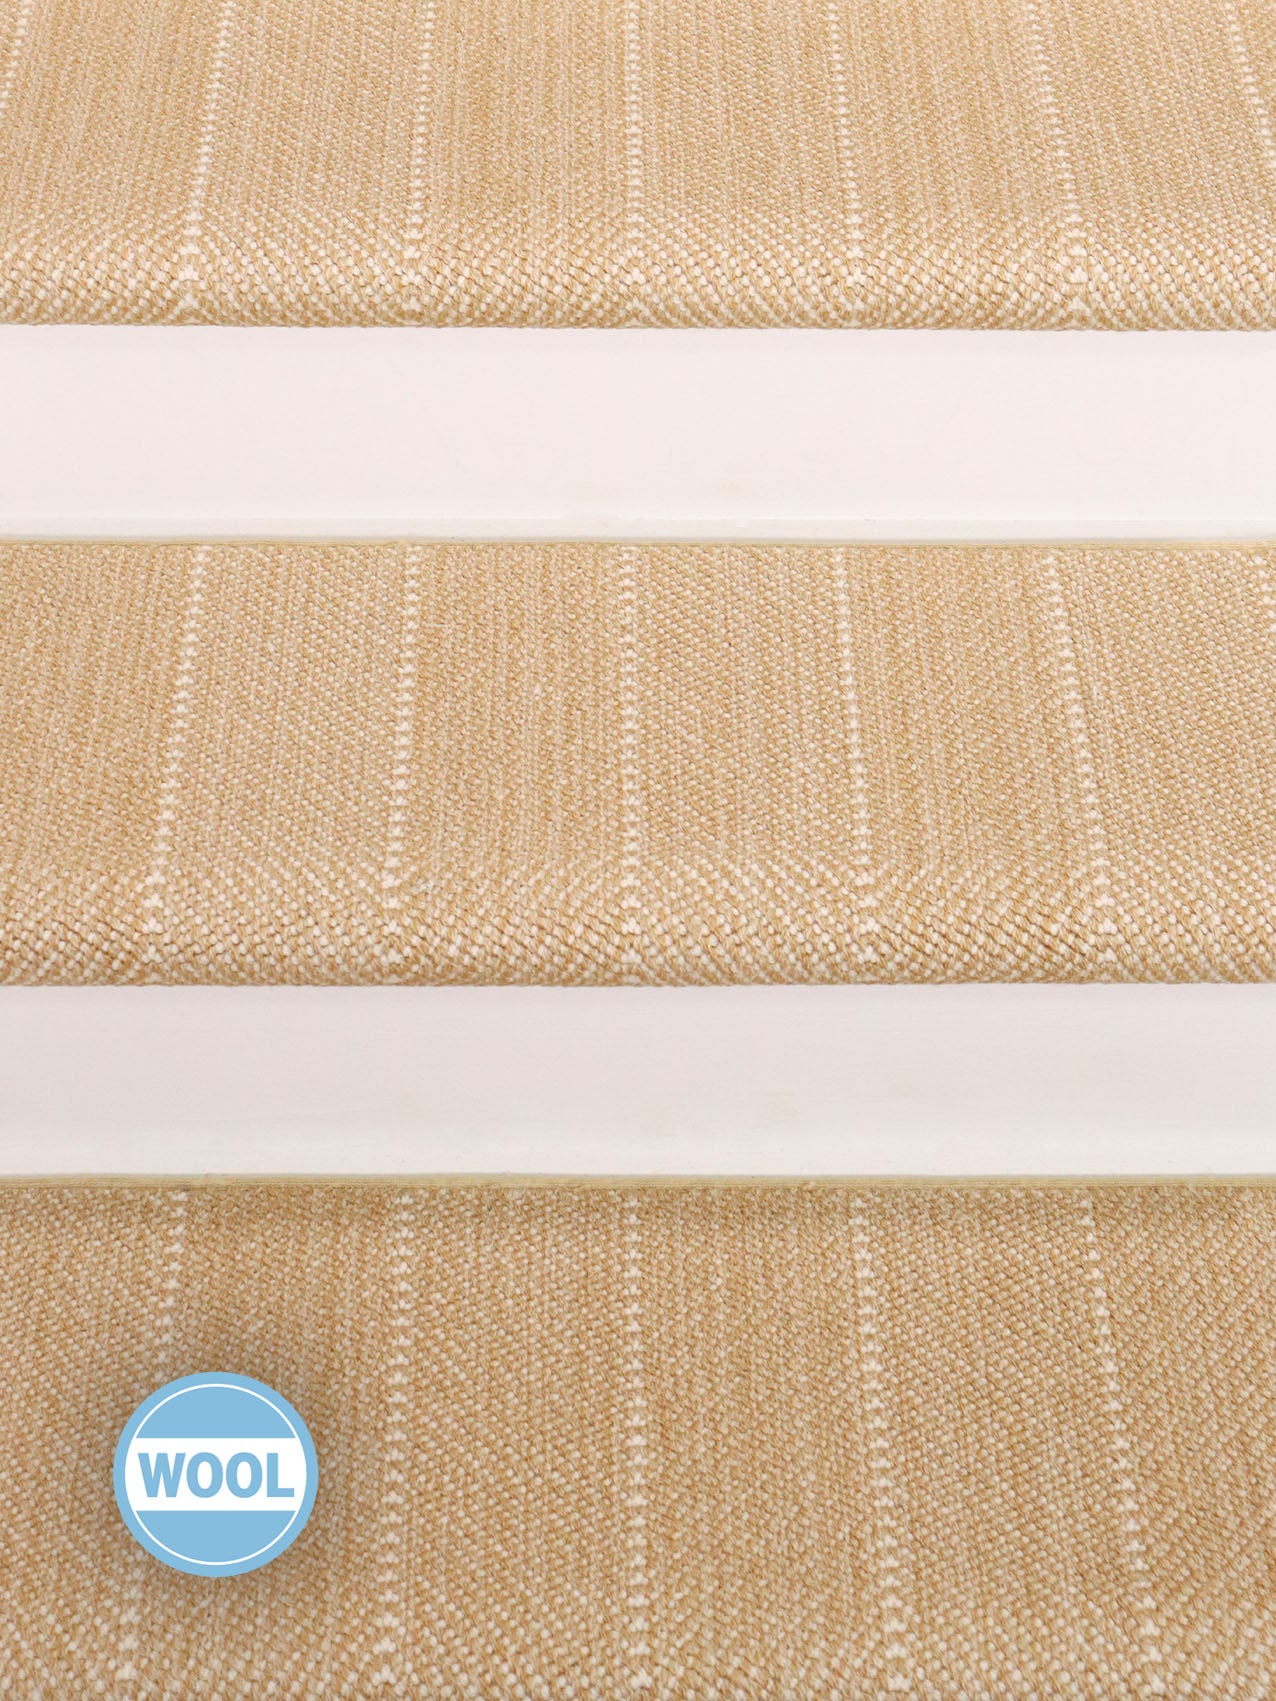 Oak Valley Wool Herringbone Carpet Stair Treads Only Designs